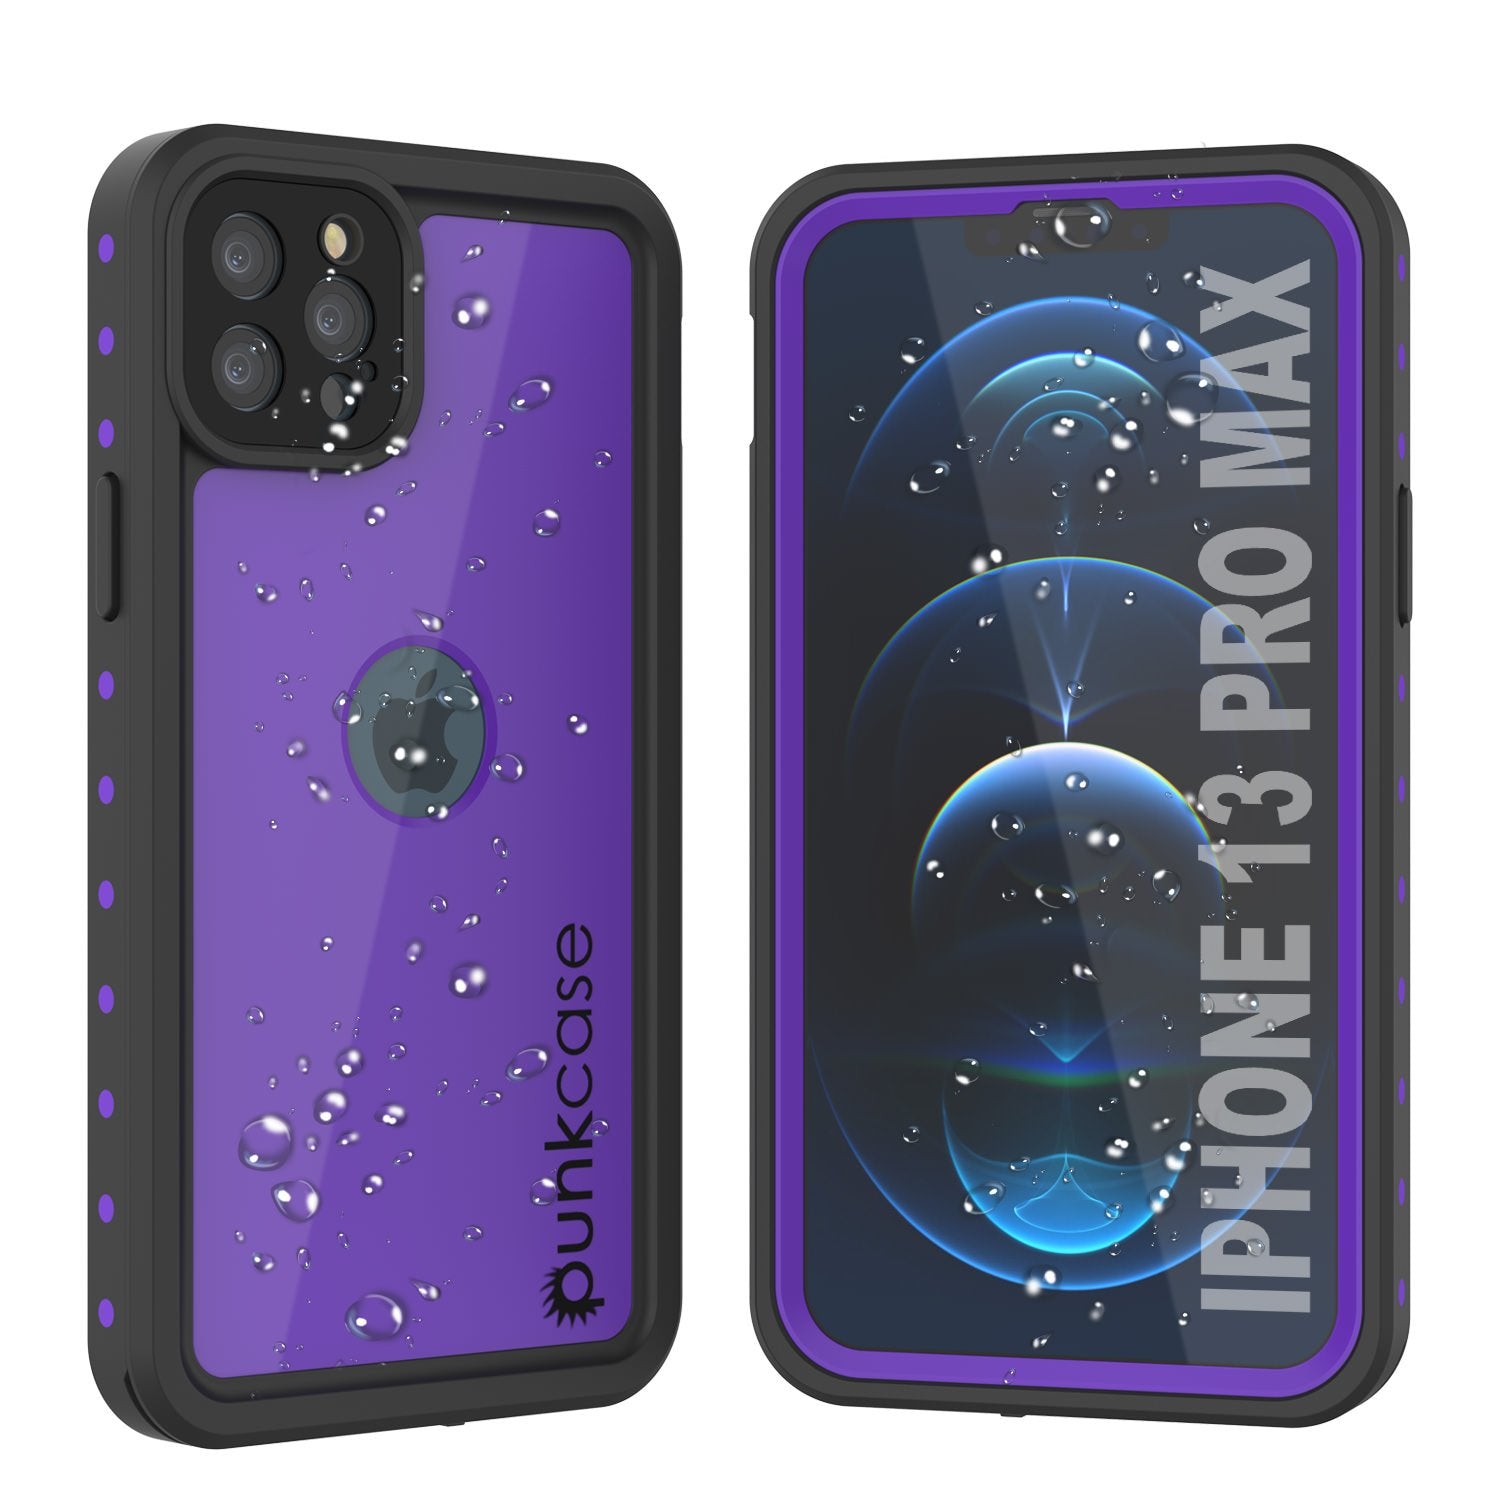 iPhone 13 Pro Max Waterproof IP68 Case, Punkcase [Purple] [StudStar Series] [Slim Fit] [Dirtproof] (Color in image: Purple)